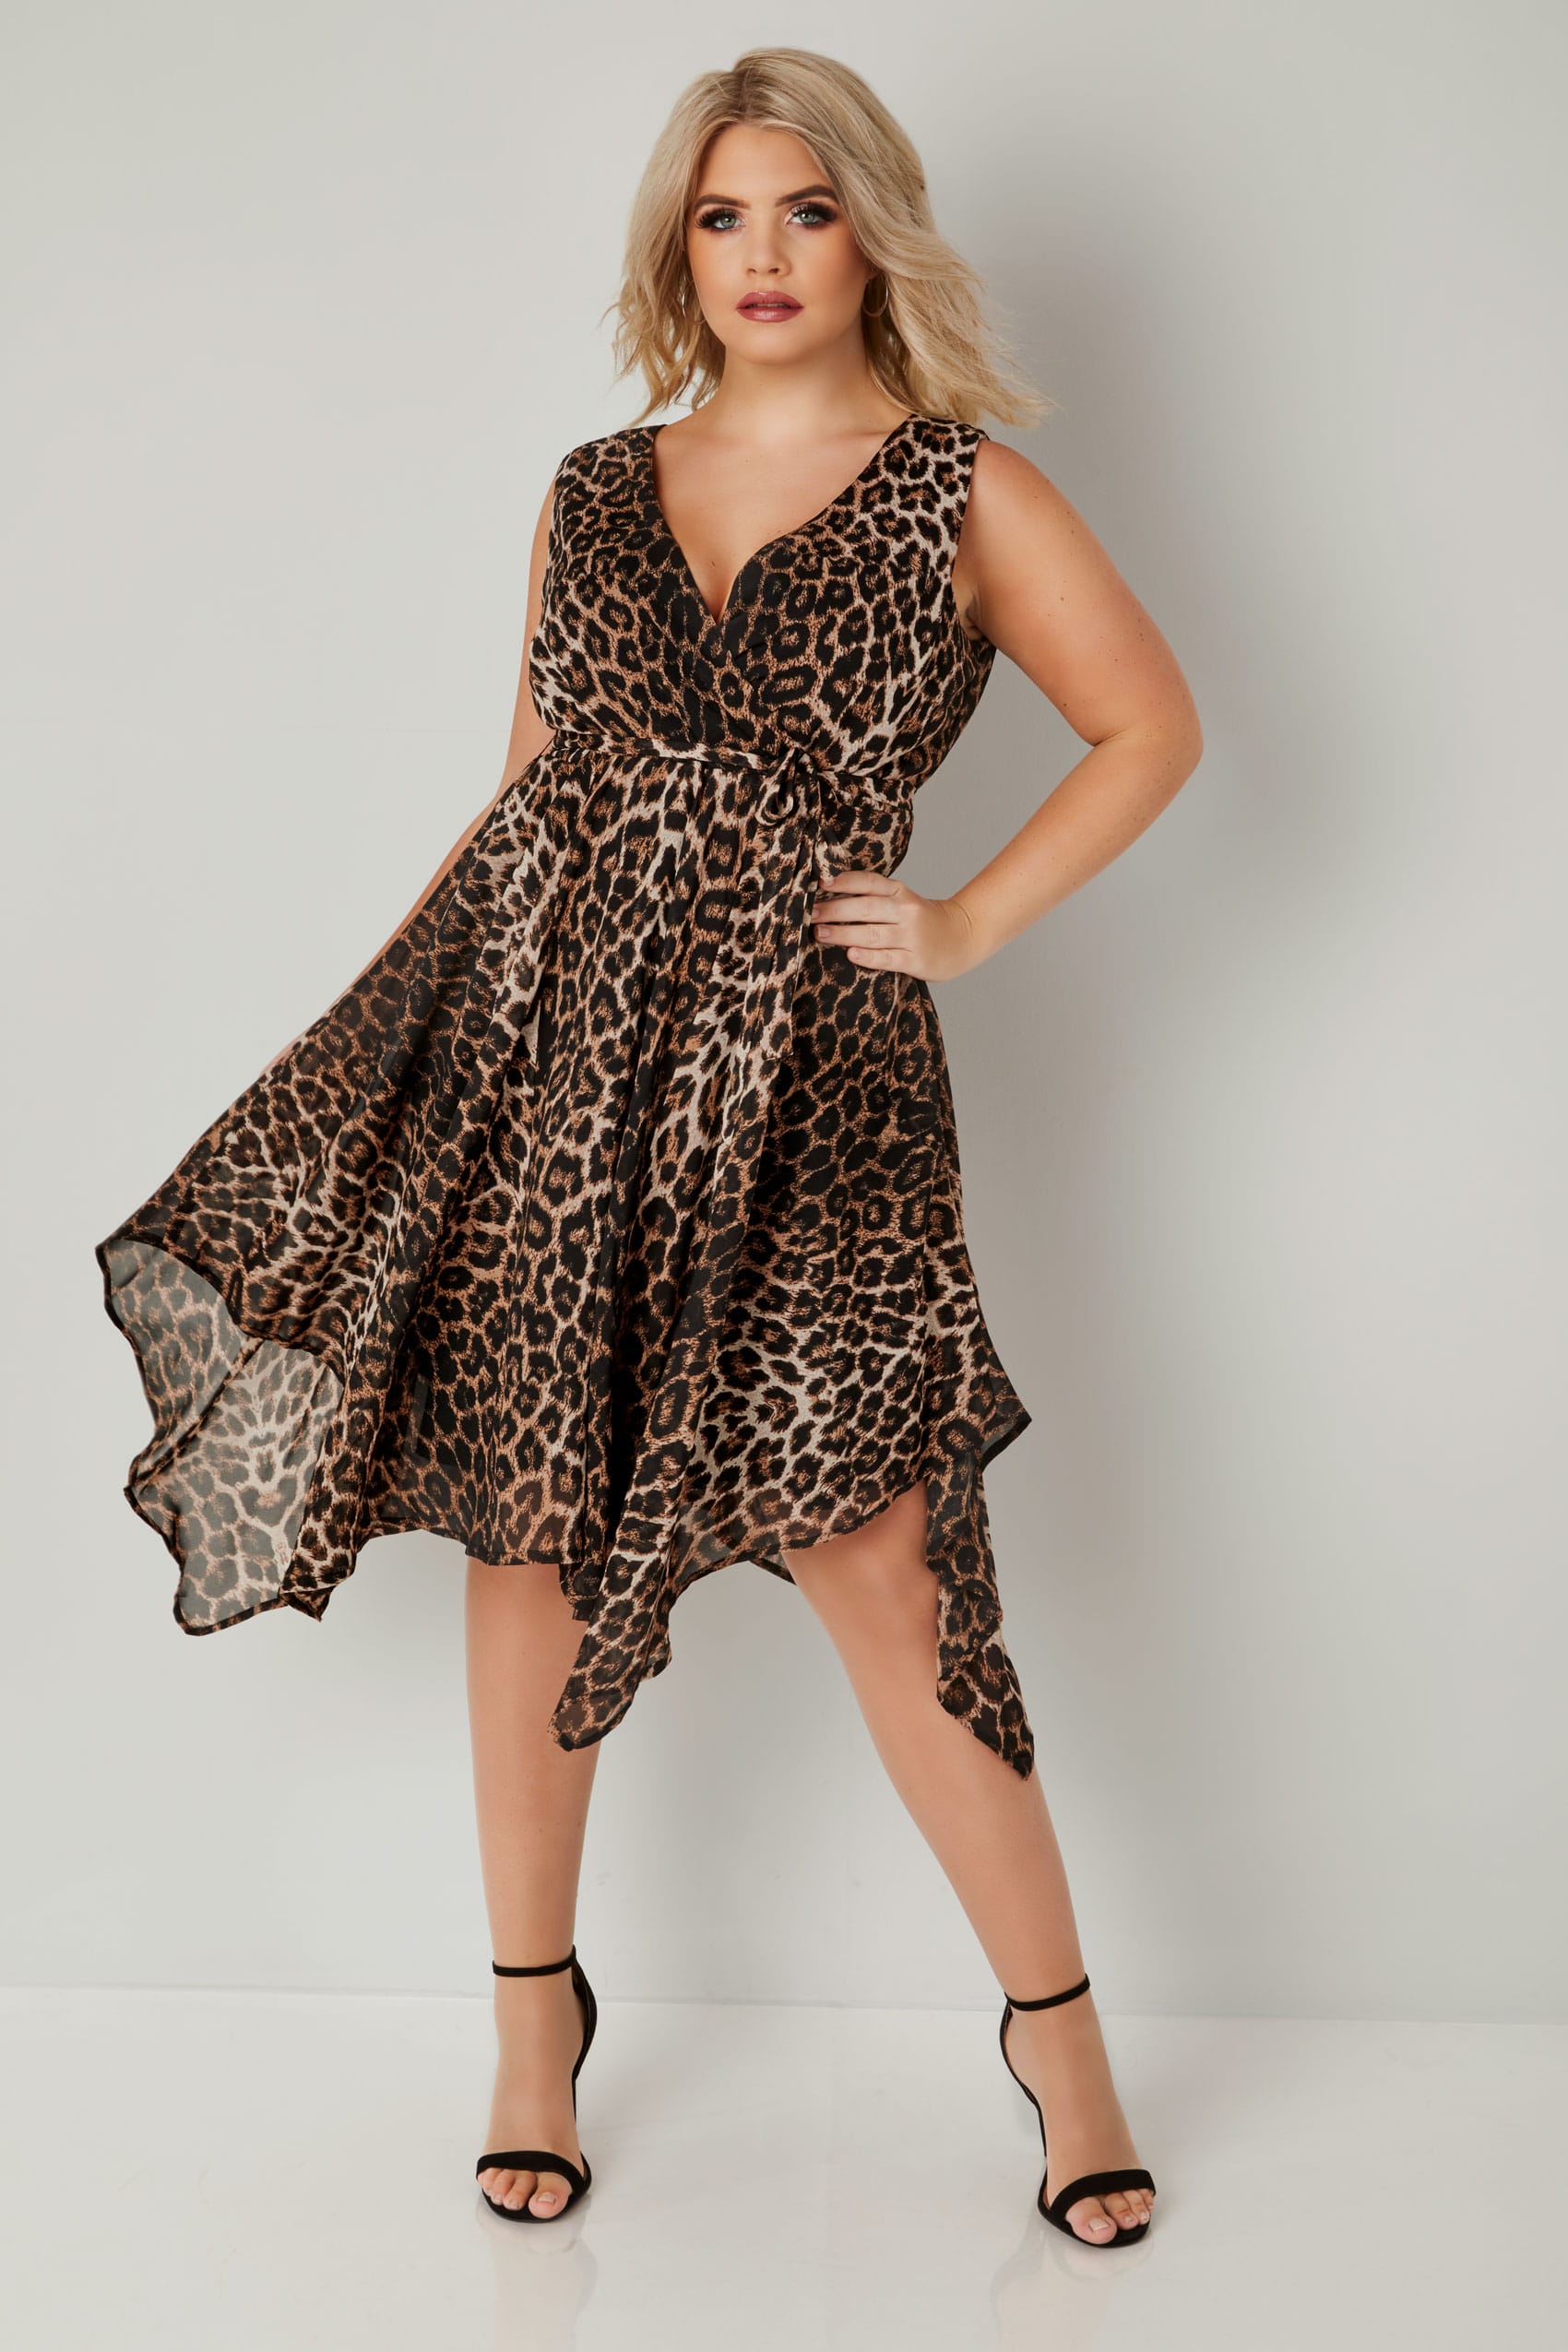 Bruine jurk in wikkellook met luipaard print, grote maten